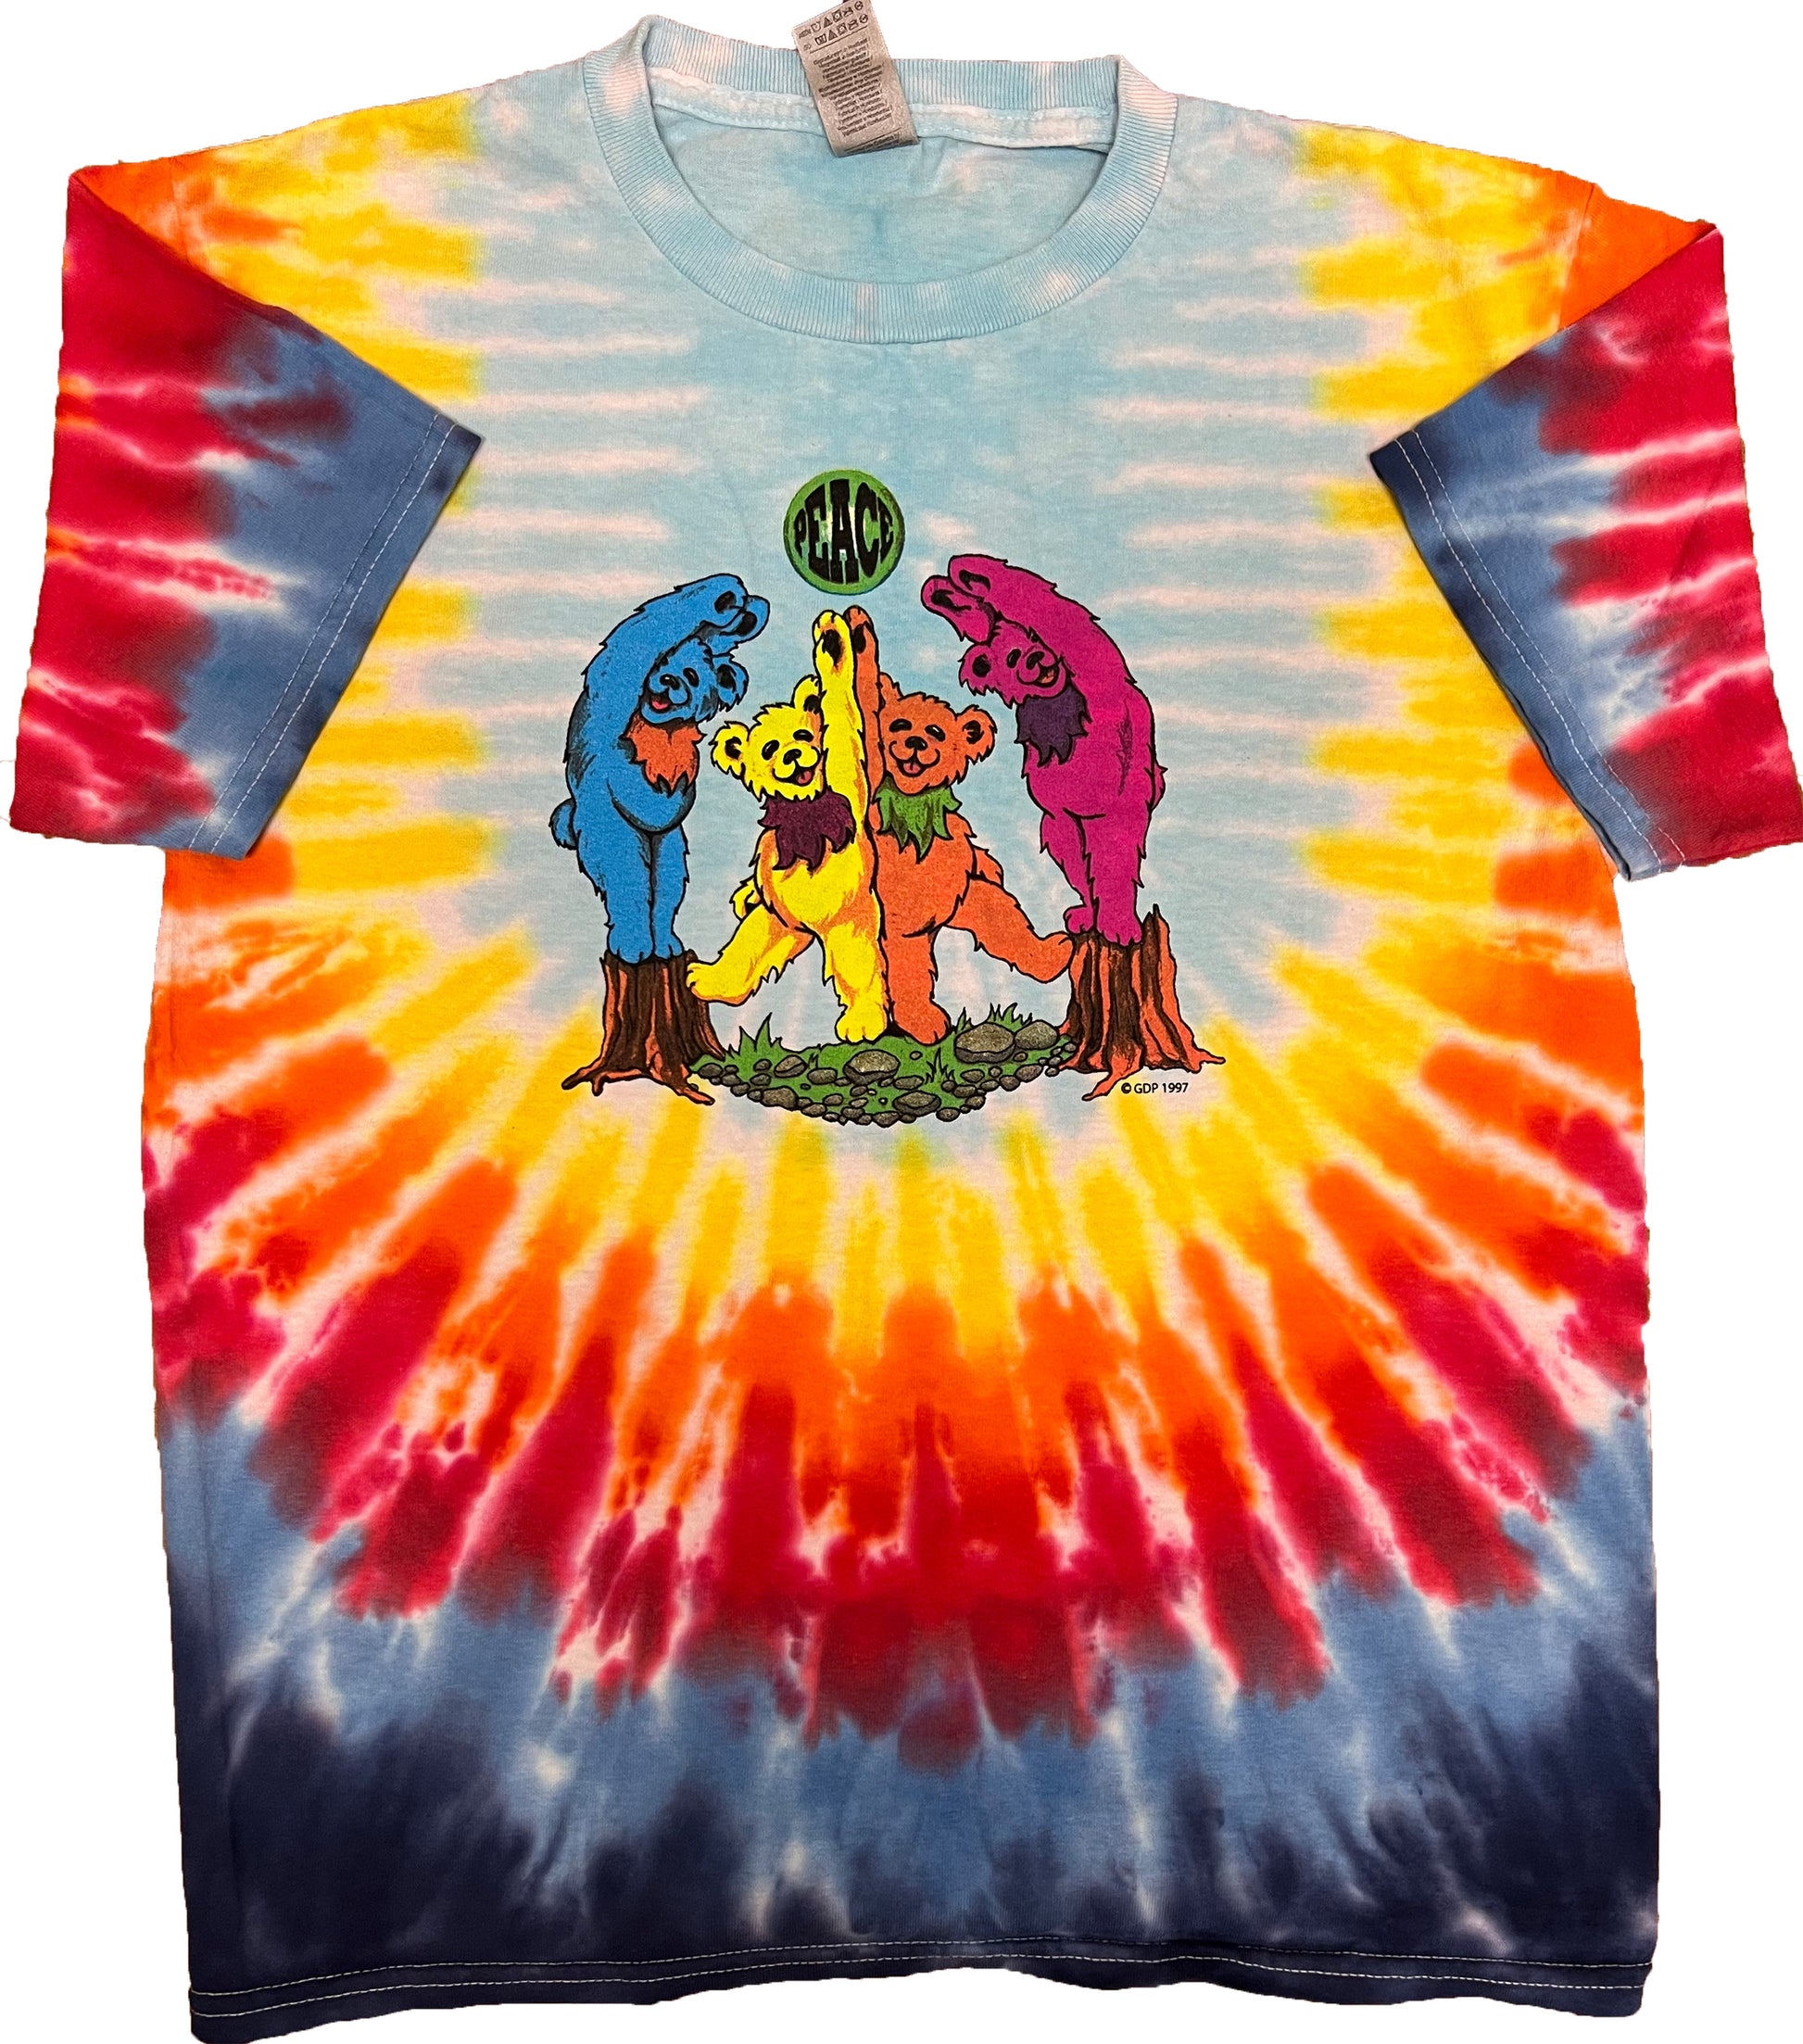 Grateful Dead Bears tie dye t-shirt, The Grateful Dead Bears tie dye t-shirt